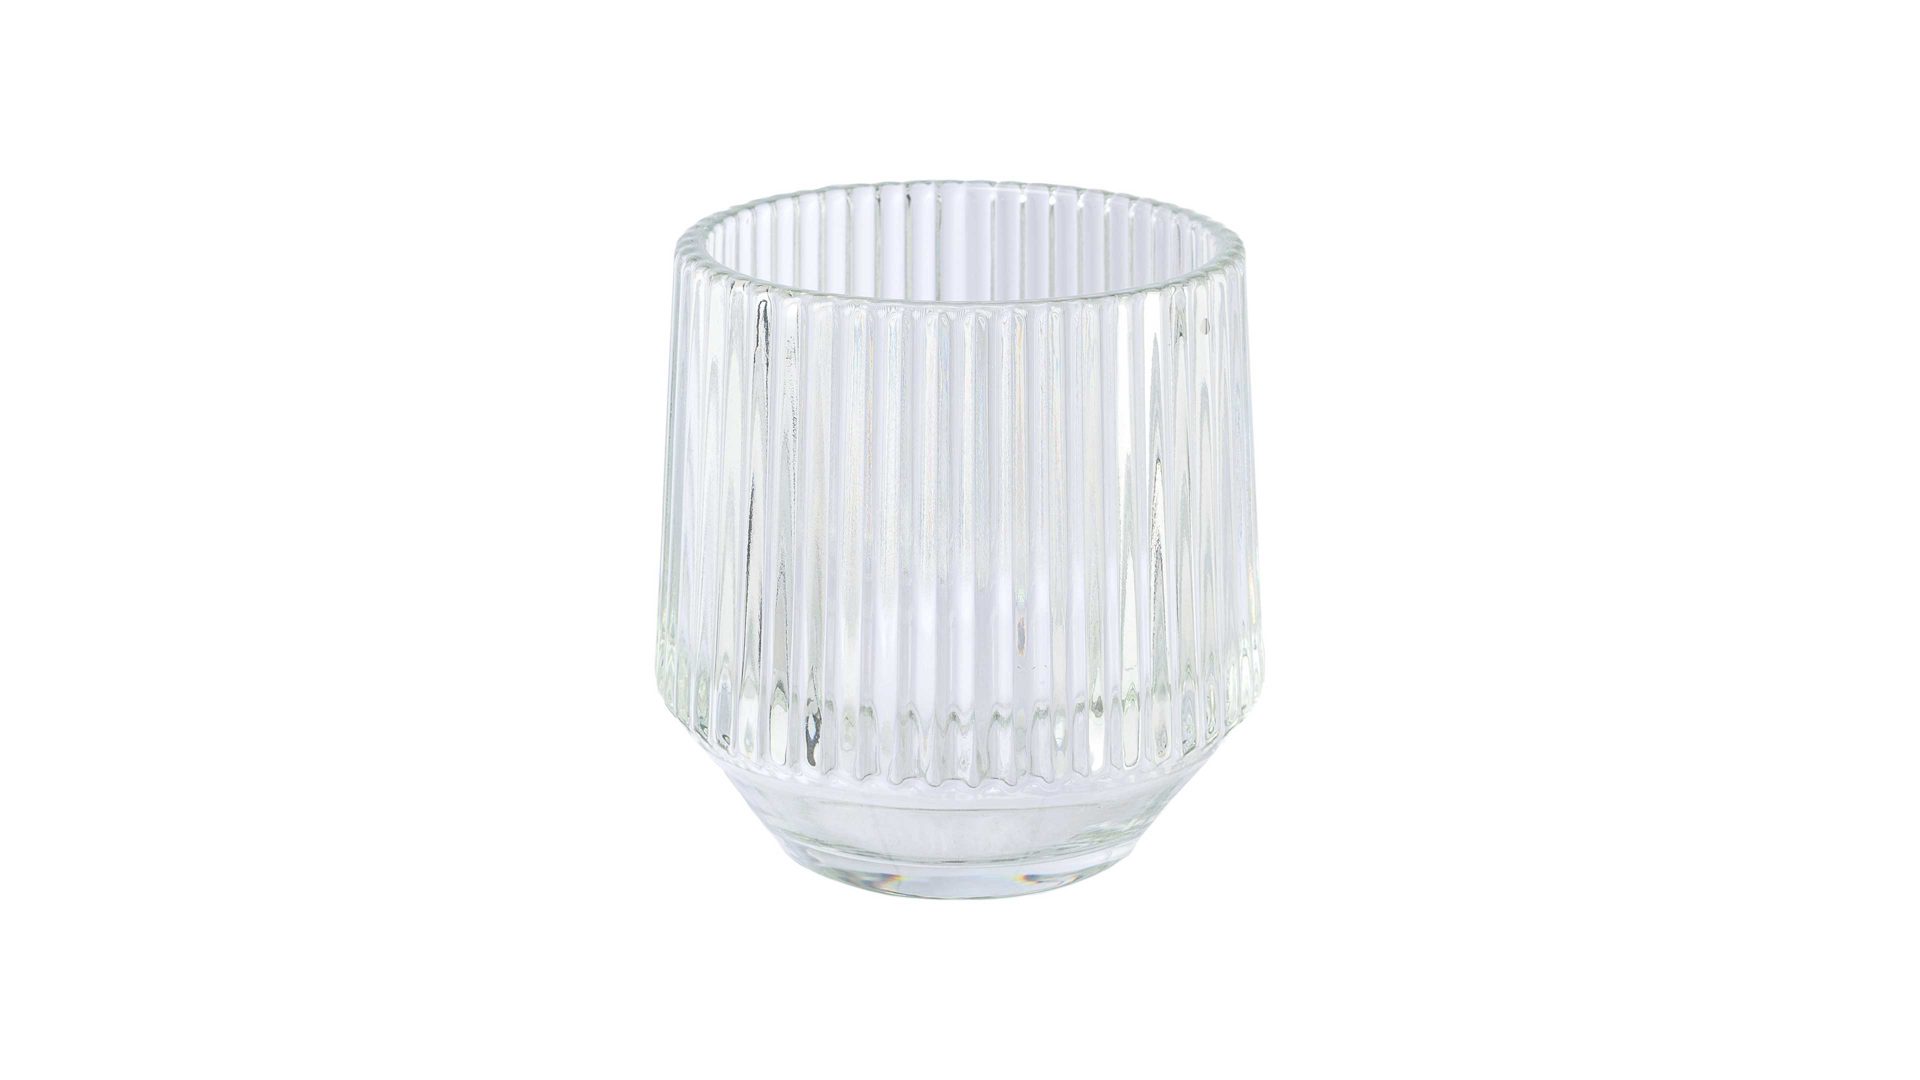 Windlicht Gasper aus Glas in Transparent Teelichtglas Tayra Klarglas - Höhe ca. 10 cm